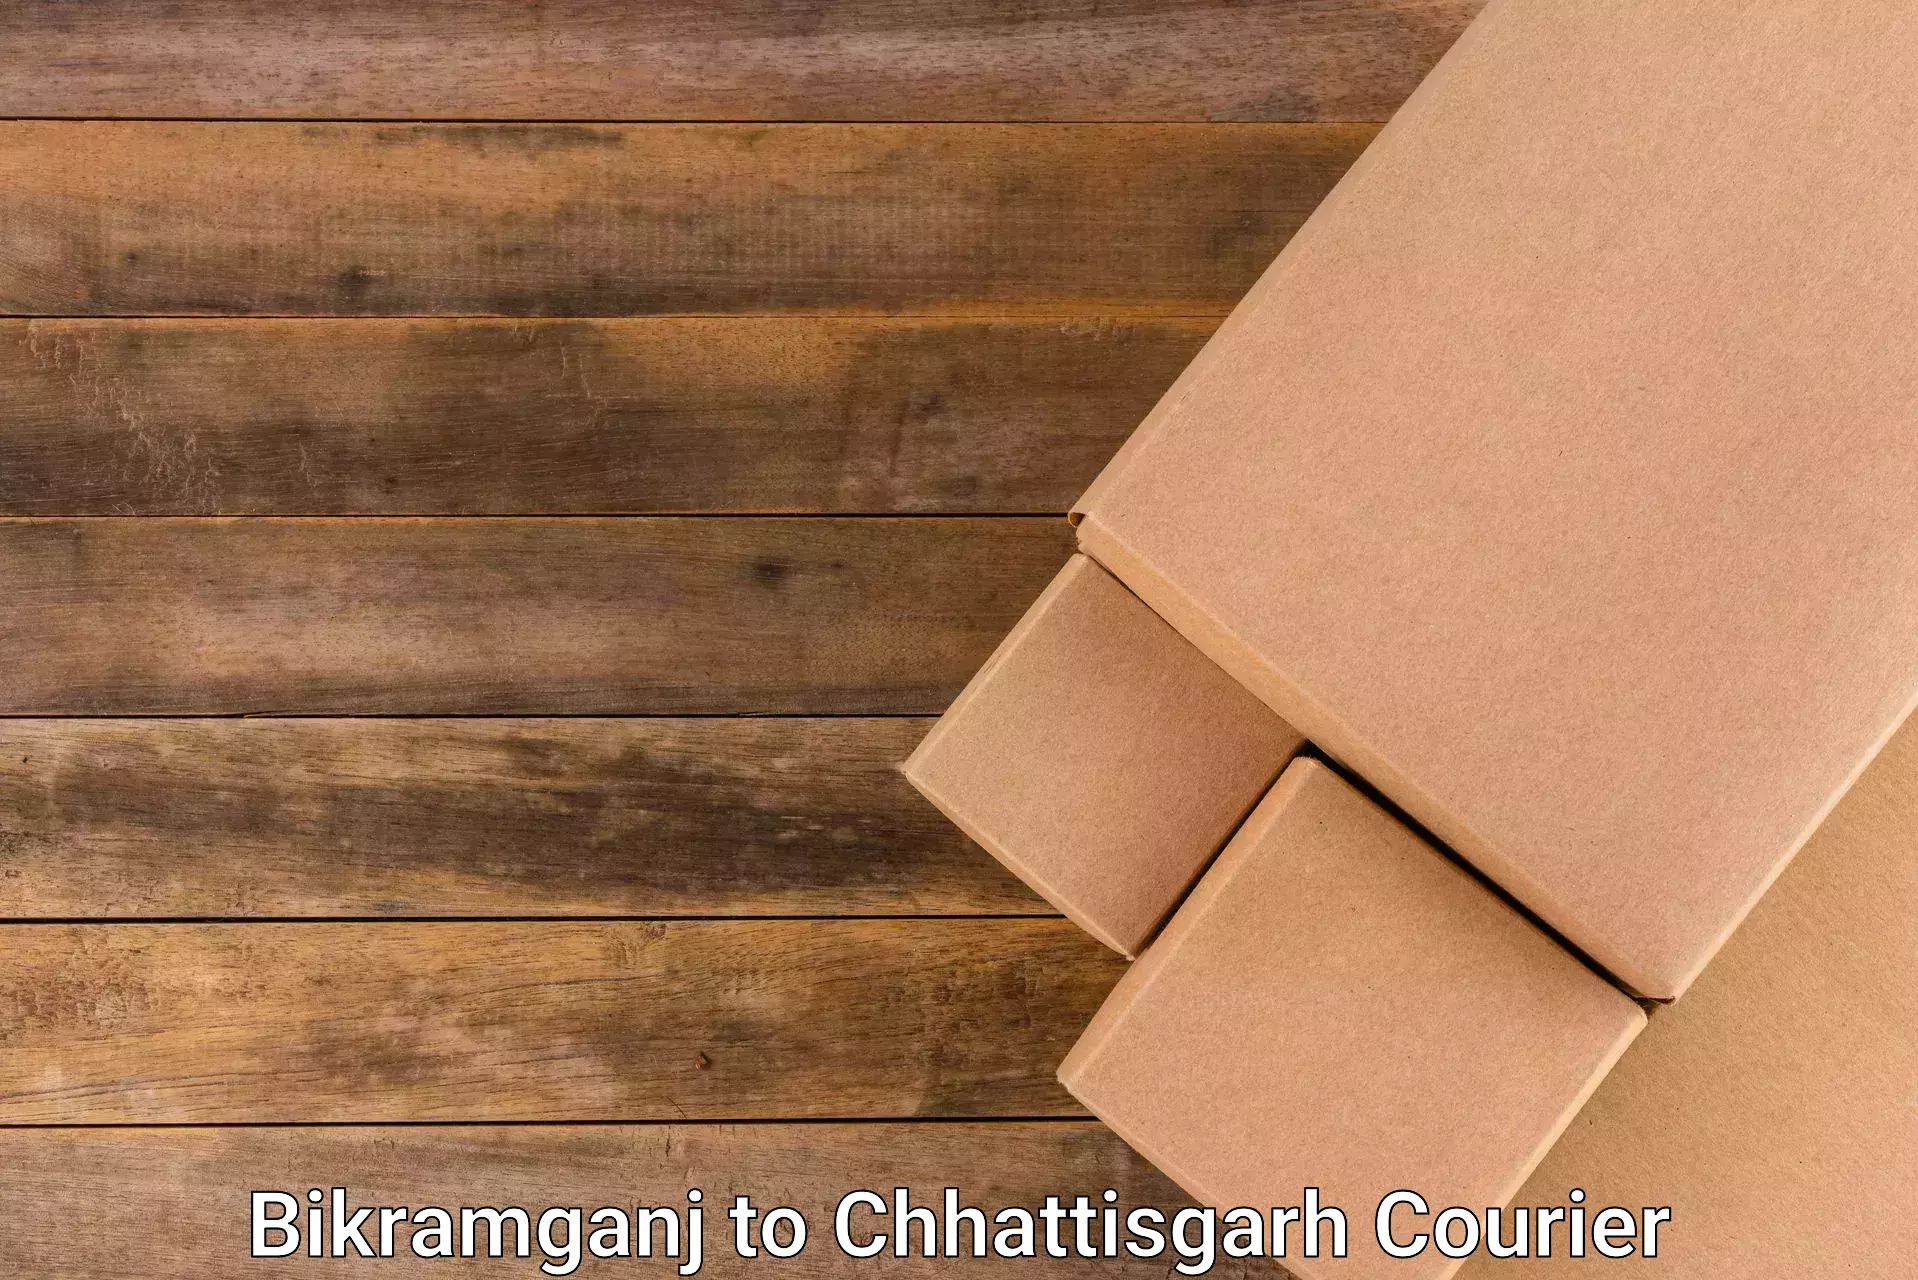 Efficient parcel service Bikramganj to Kawardha